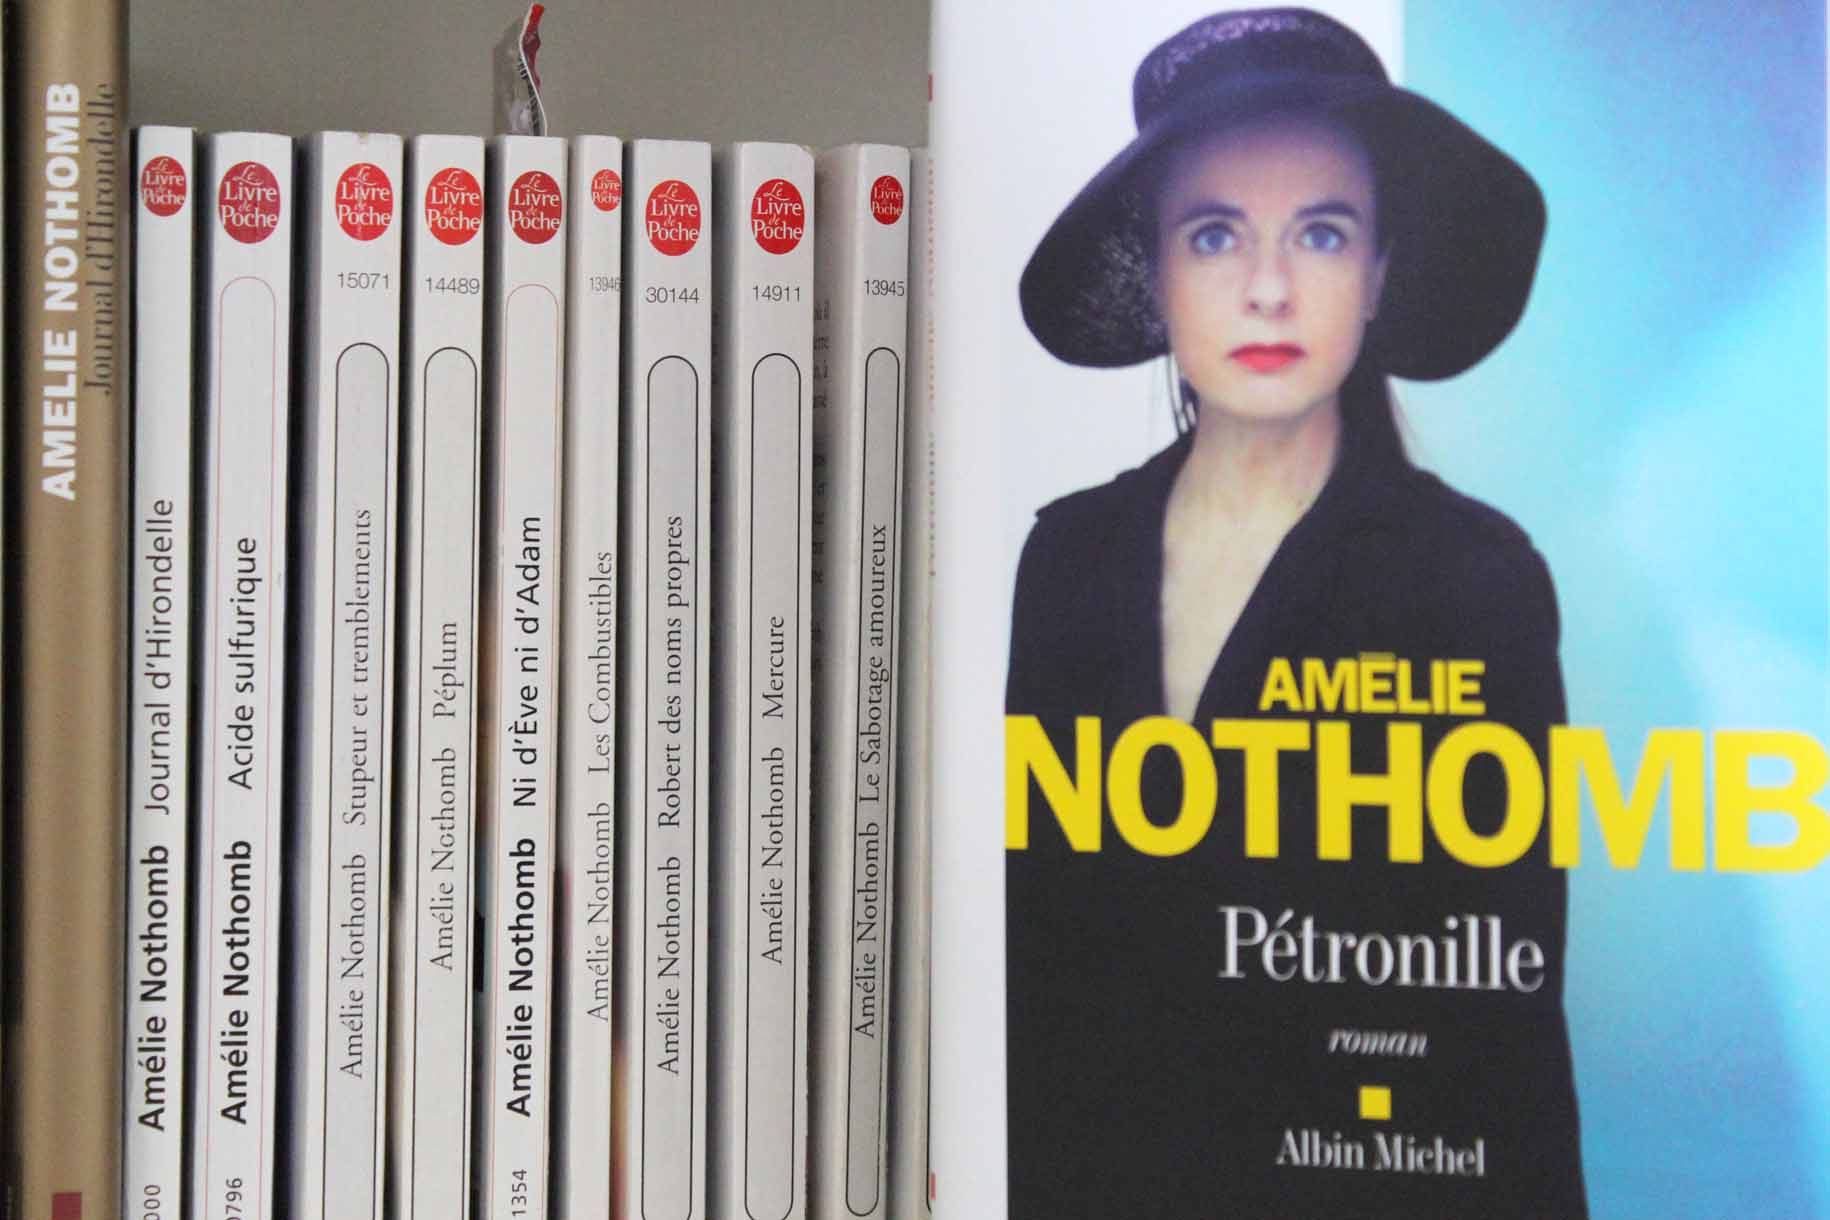 Lecture et critique du dernier livre de Amélie Nothomb, Pétronille, sur le blog culture esperluette. Rentrée littéraire 2014